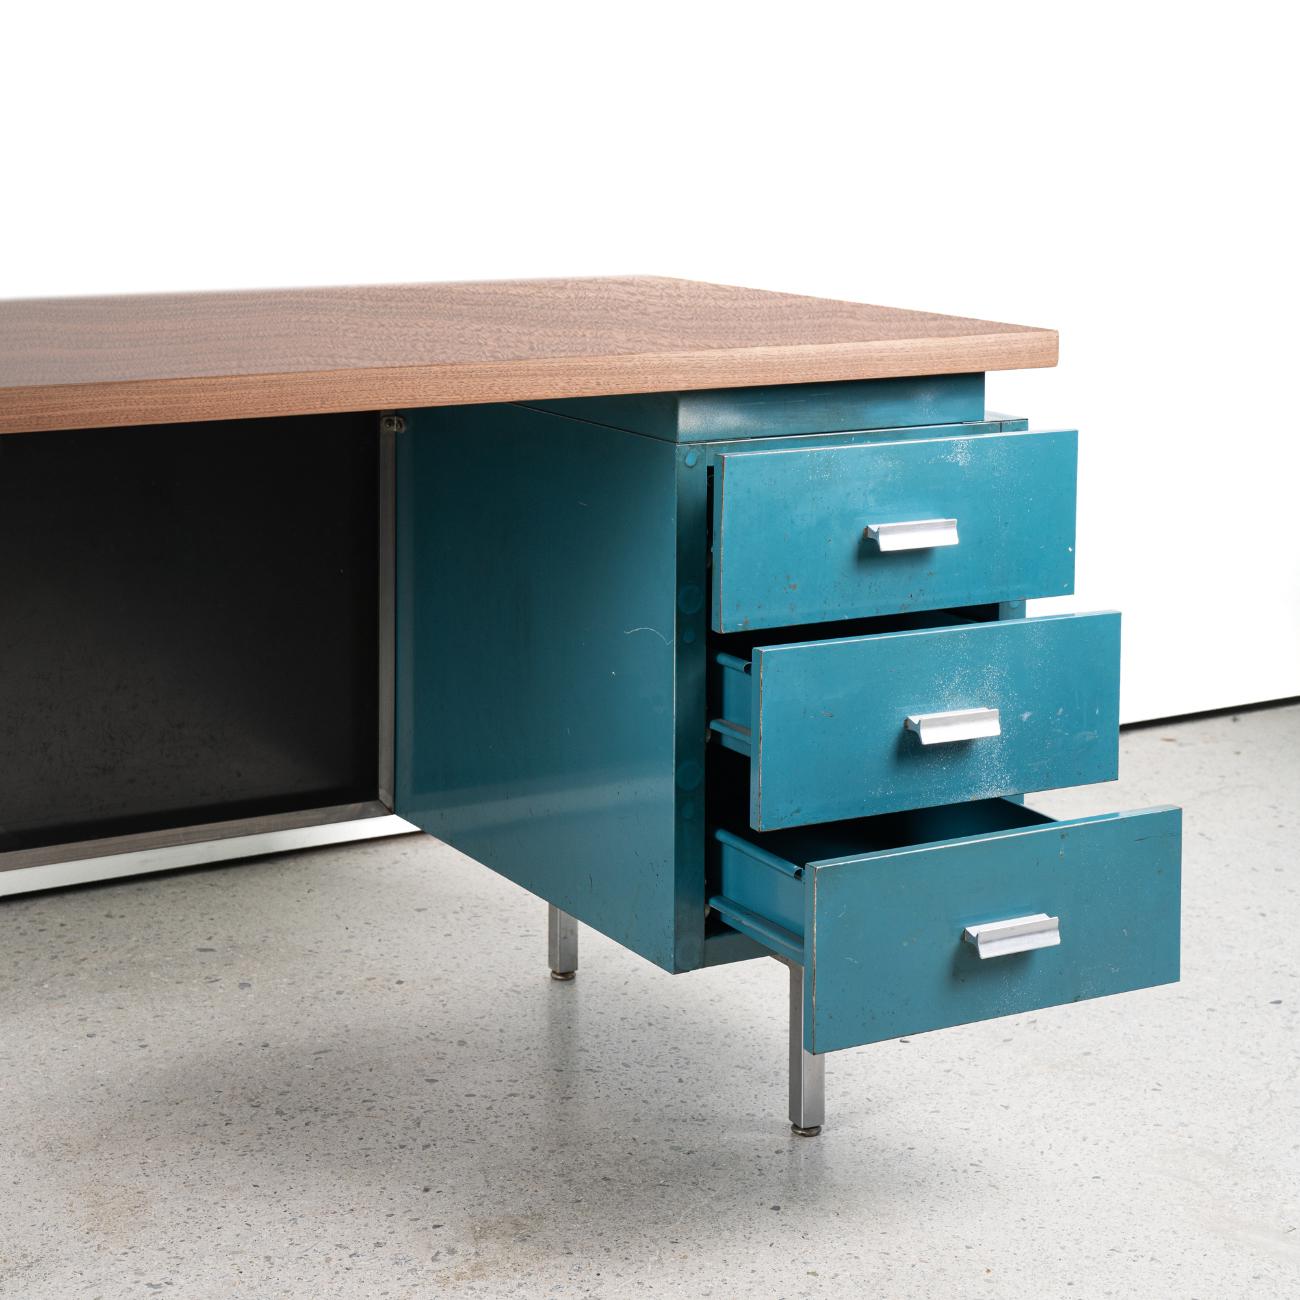 Der MMG-Schreibtisch, der für einen kurzen Zeitraum von nur 5 Jahren produziert wurde, wurde mit 22 Teilen in einer modularen Form entworfen, die je nach Wahl des Benutzers kombiniert werden können. 
Es wird oft als ein Entwurf von Goerge Nelson